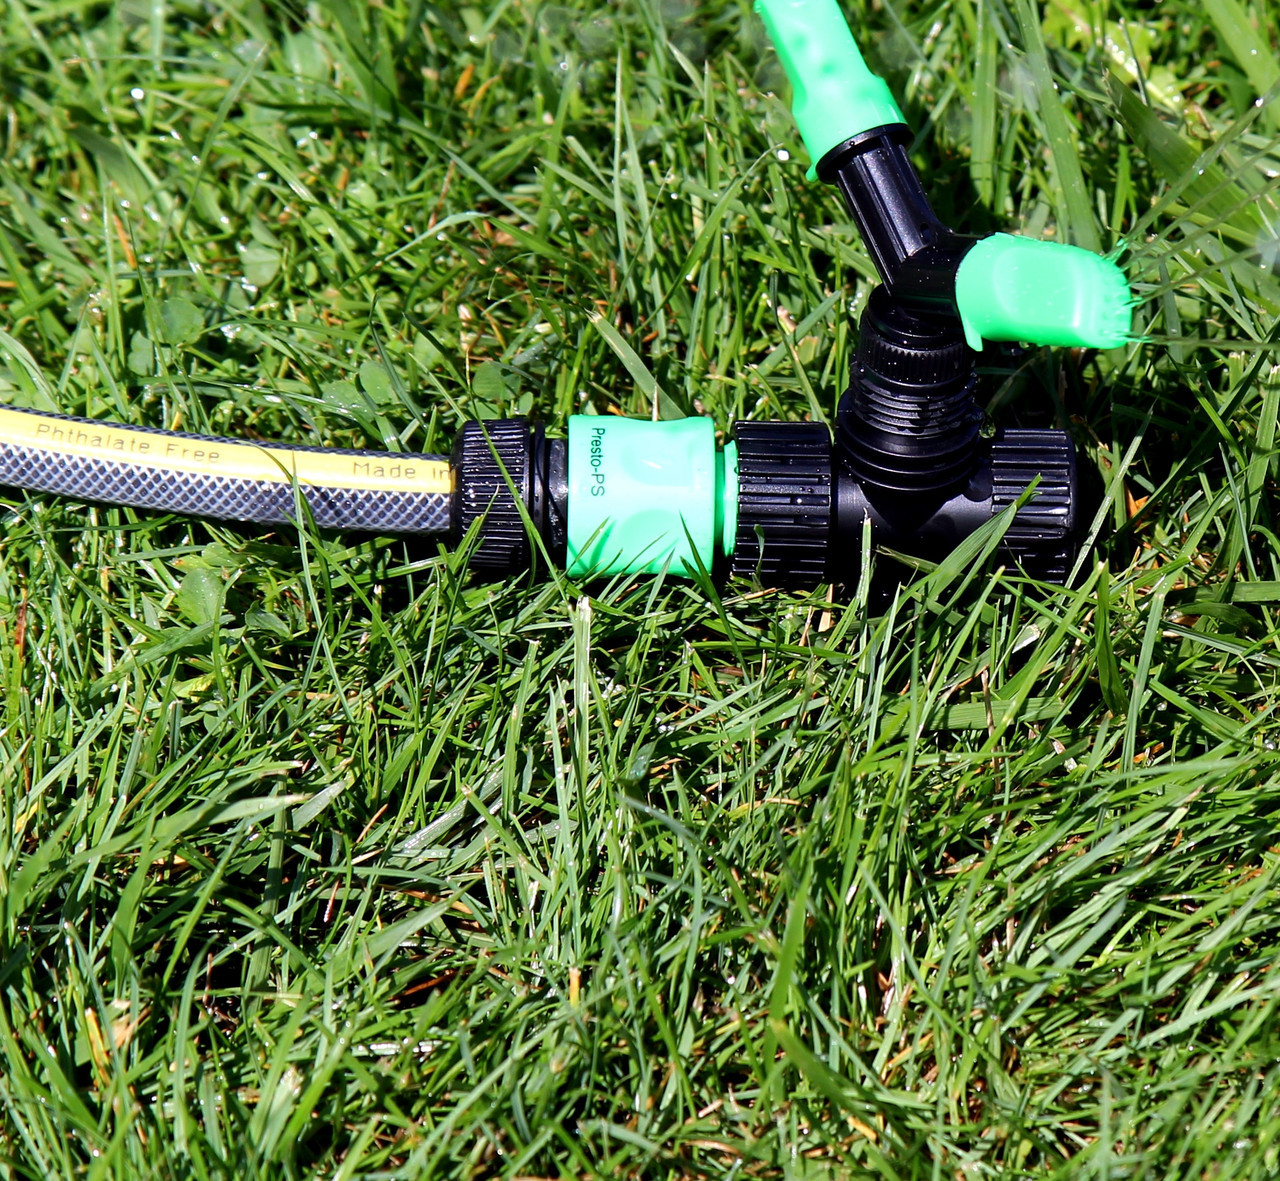 Насос для полива газона. Шланг на траве. Коннектор для шланга Hozelock Aquastop Plus 19 мм (TP). Как работает Аквастоп на шланге для полива. Коннектор для шланга с аквастопом как работает.